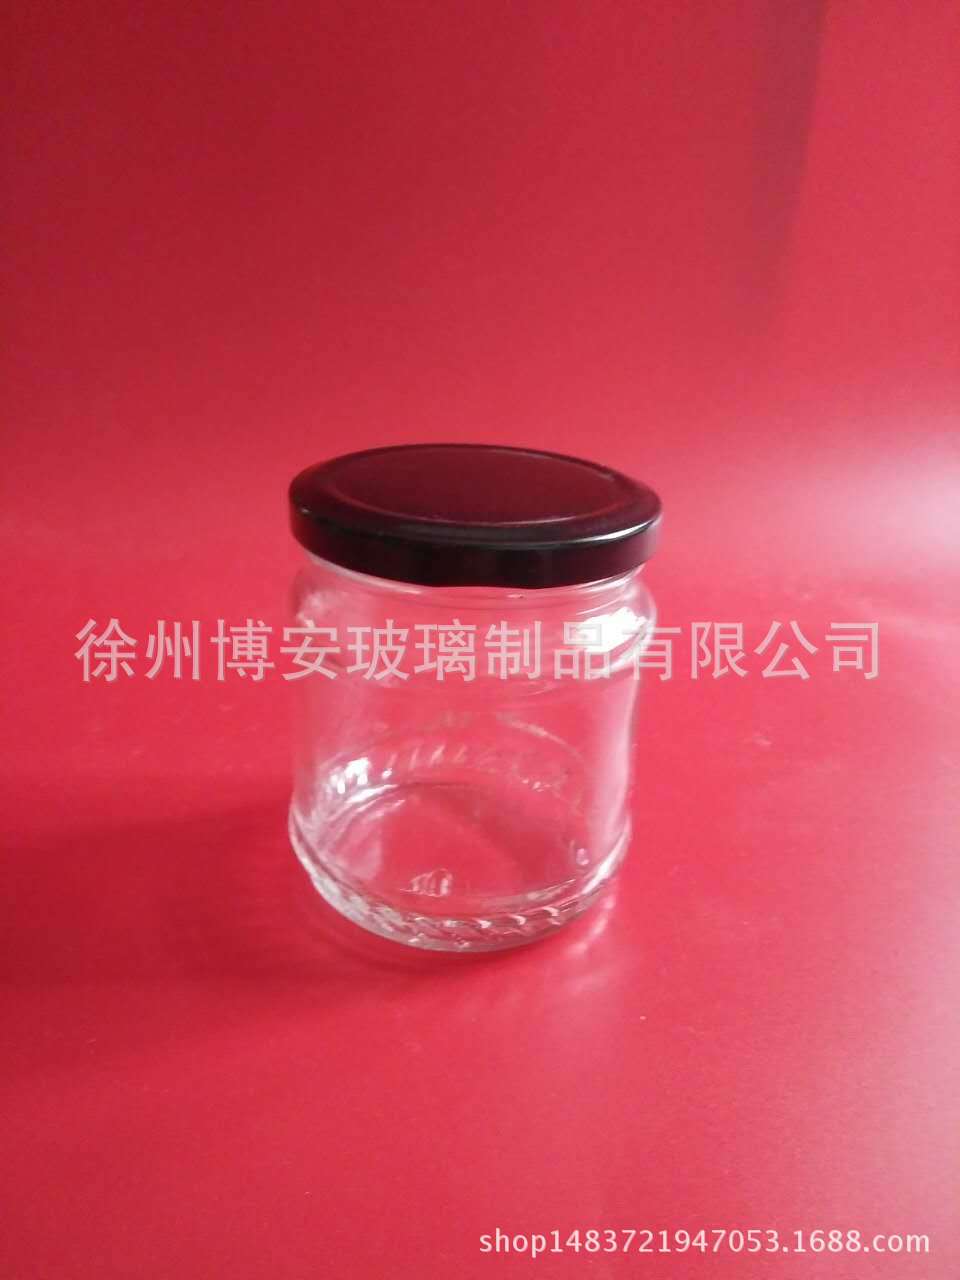 徐州市厂家直销玻璃瓶酱菜瓶蜂蜜瓶密封罐厂家厂家直销玻璃瓶酱菜瓶蜂蜜瓶密封罐罐头